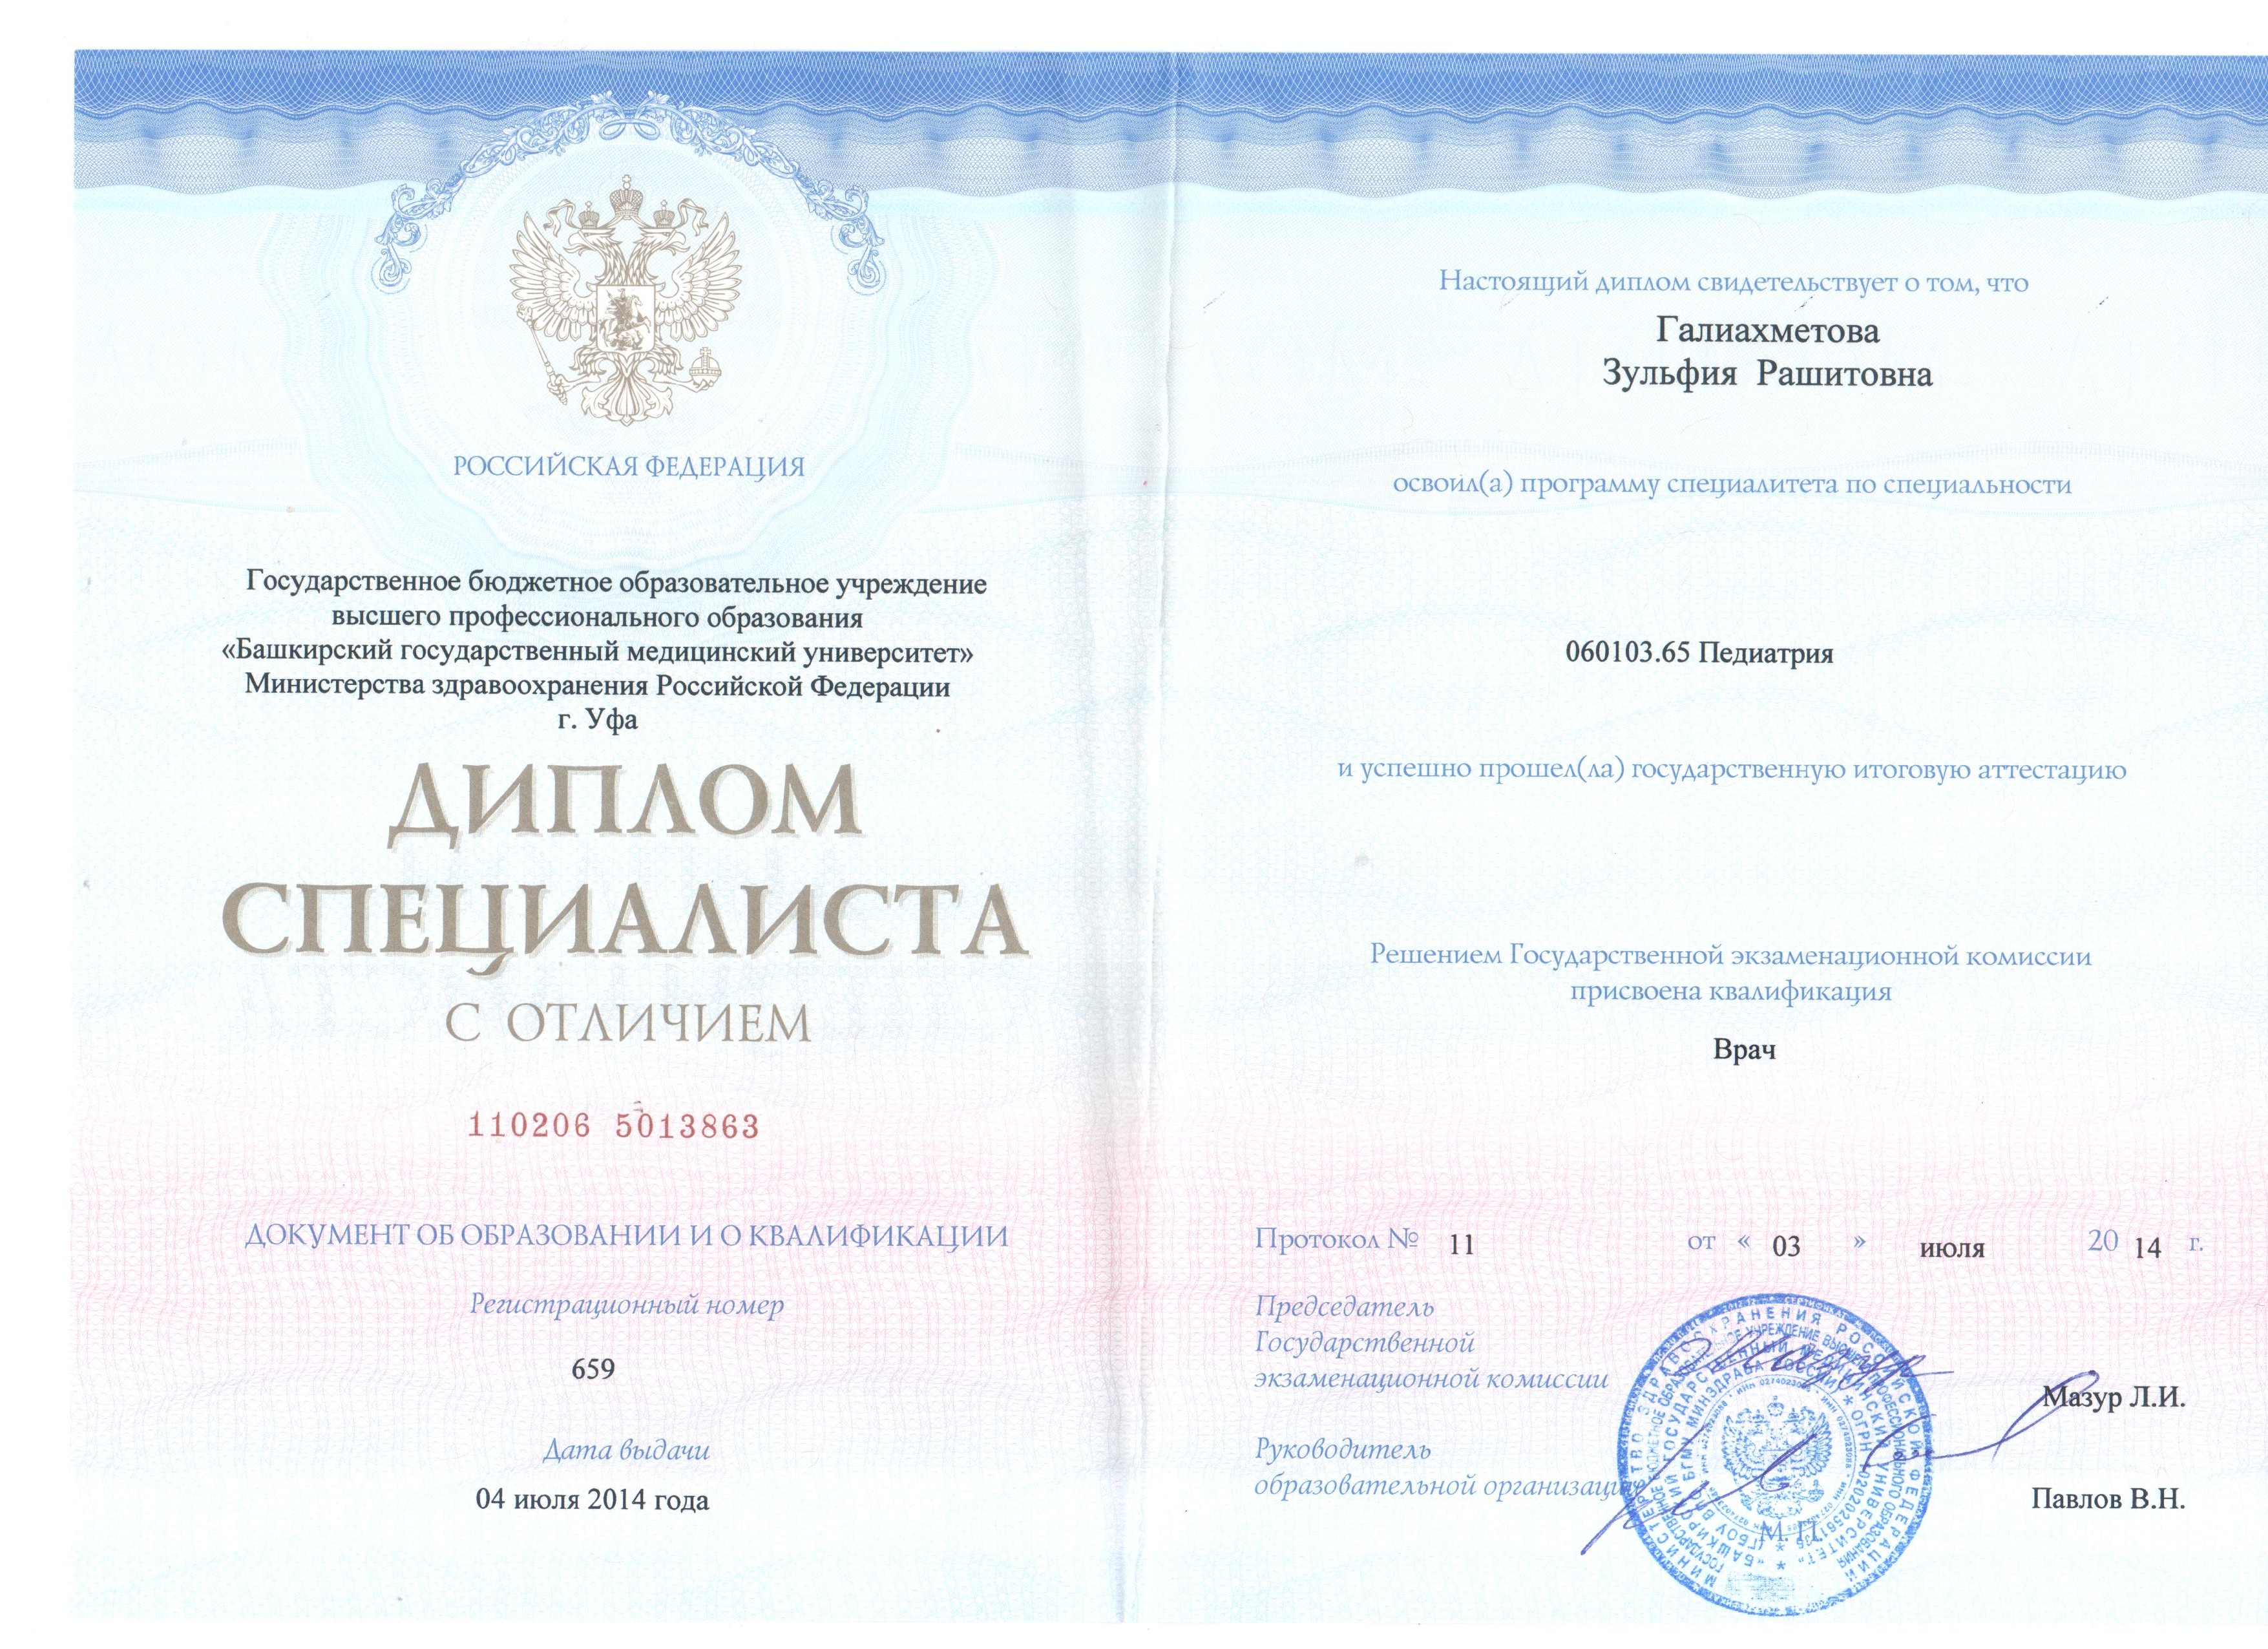 Сертификат Галиахметовой Зульфии